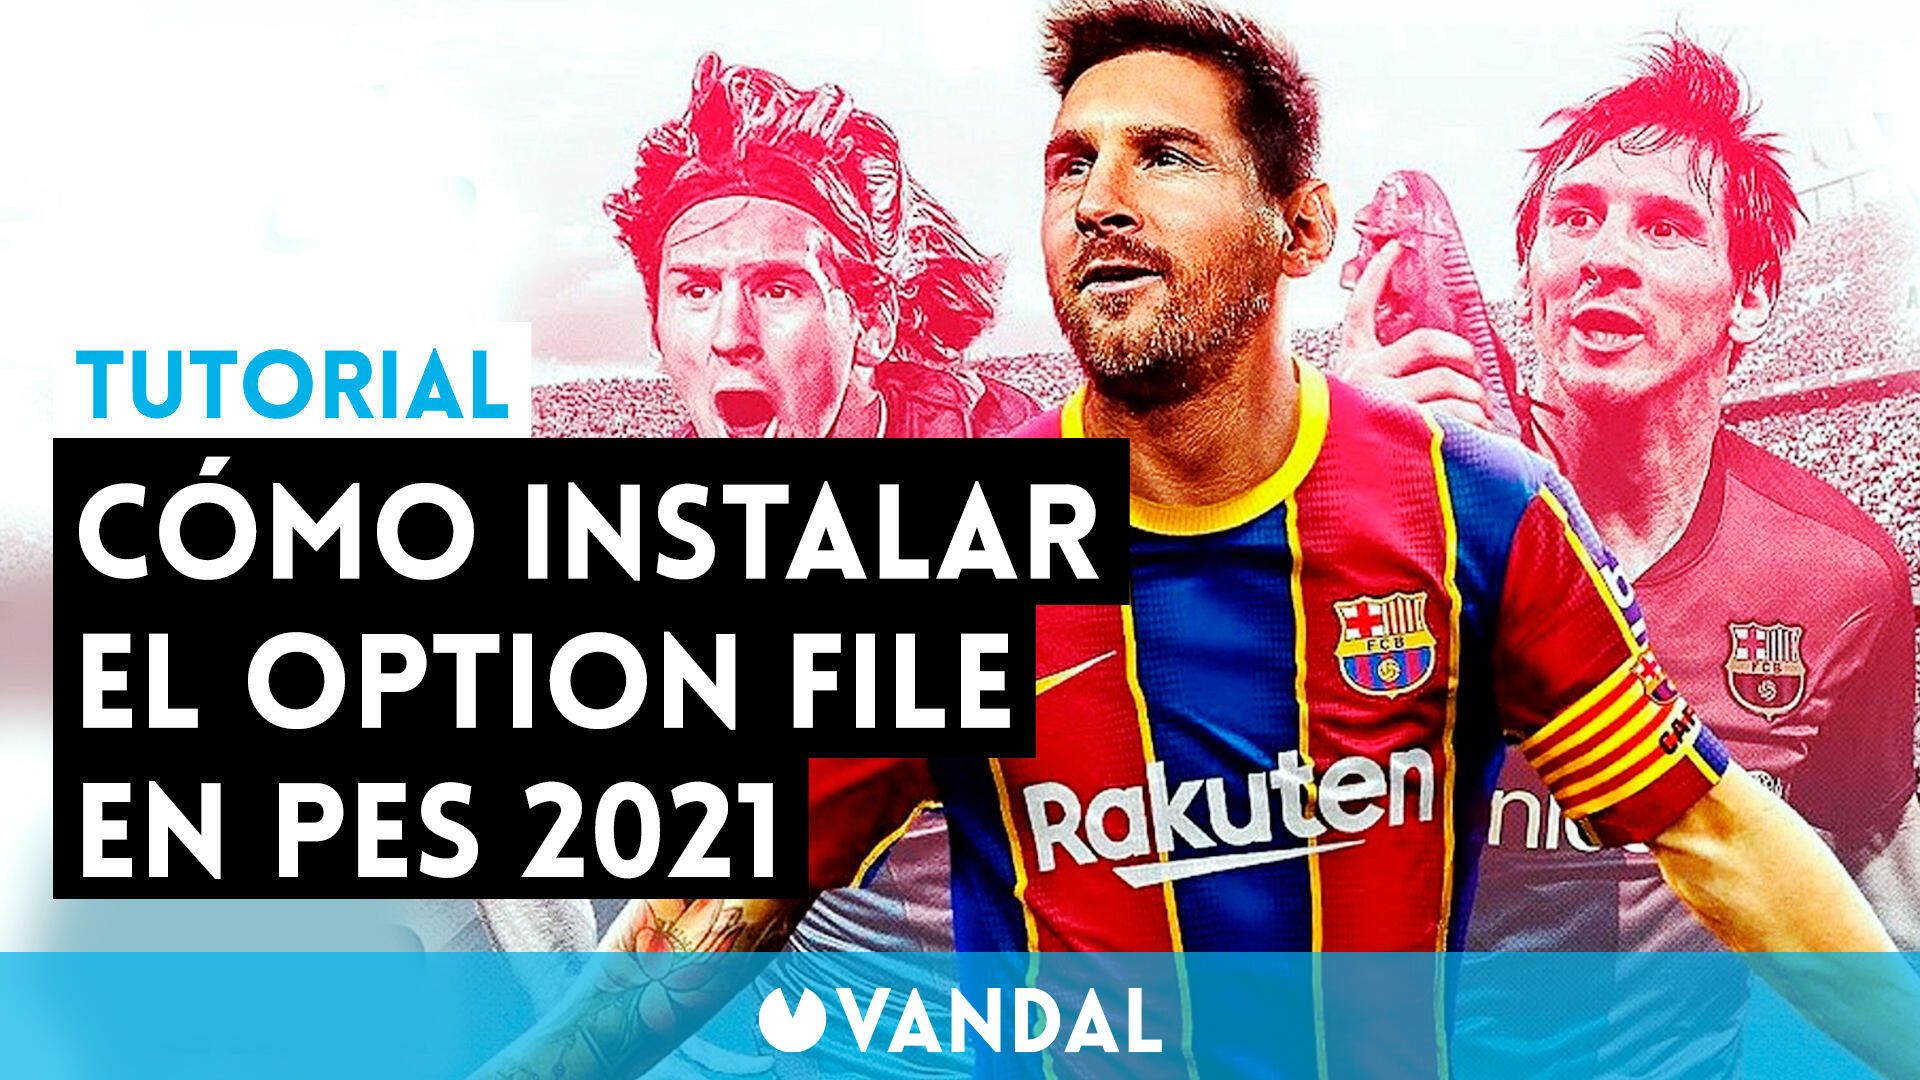 eFootball PES 2021: ¿Cómo instalar un Option File en PS4? - TUTORIAL -